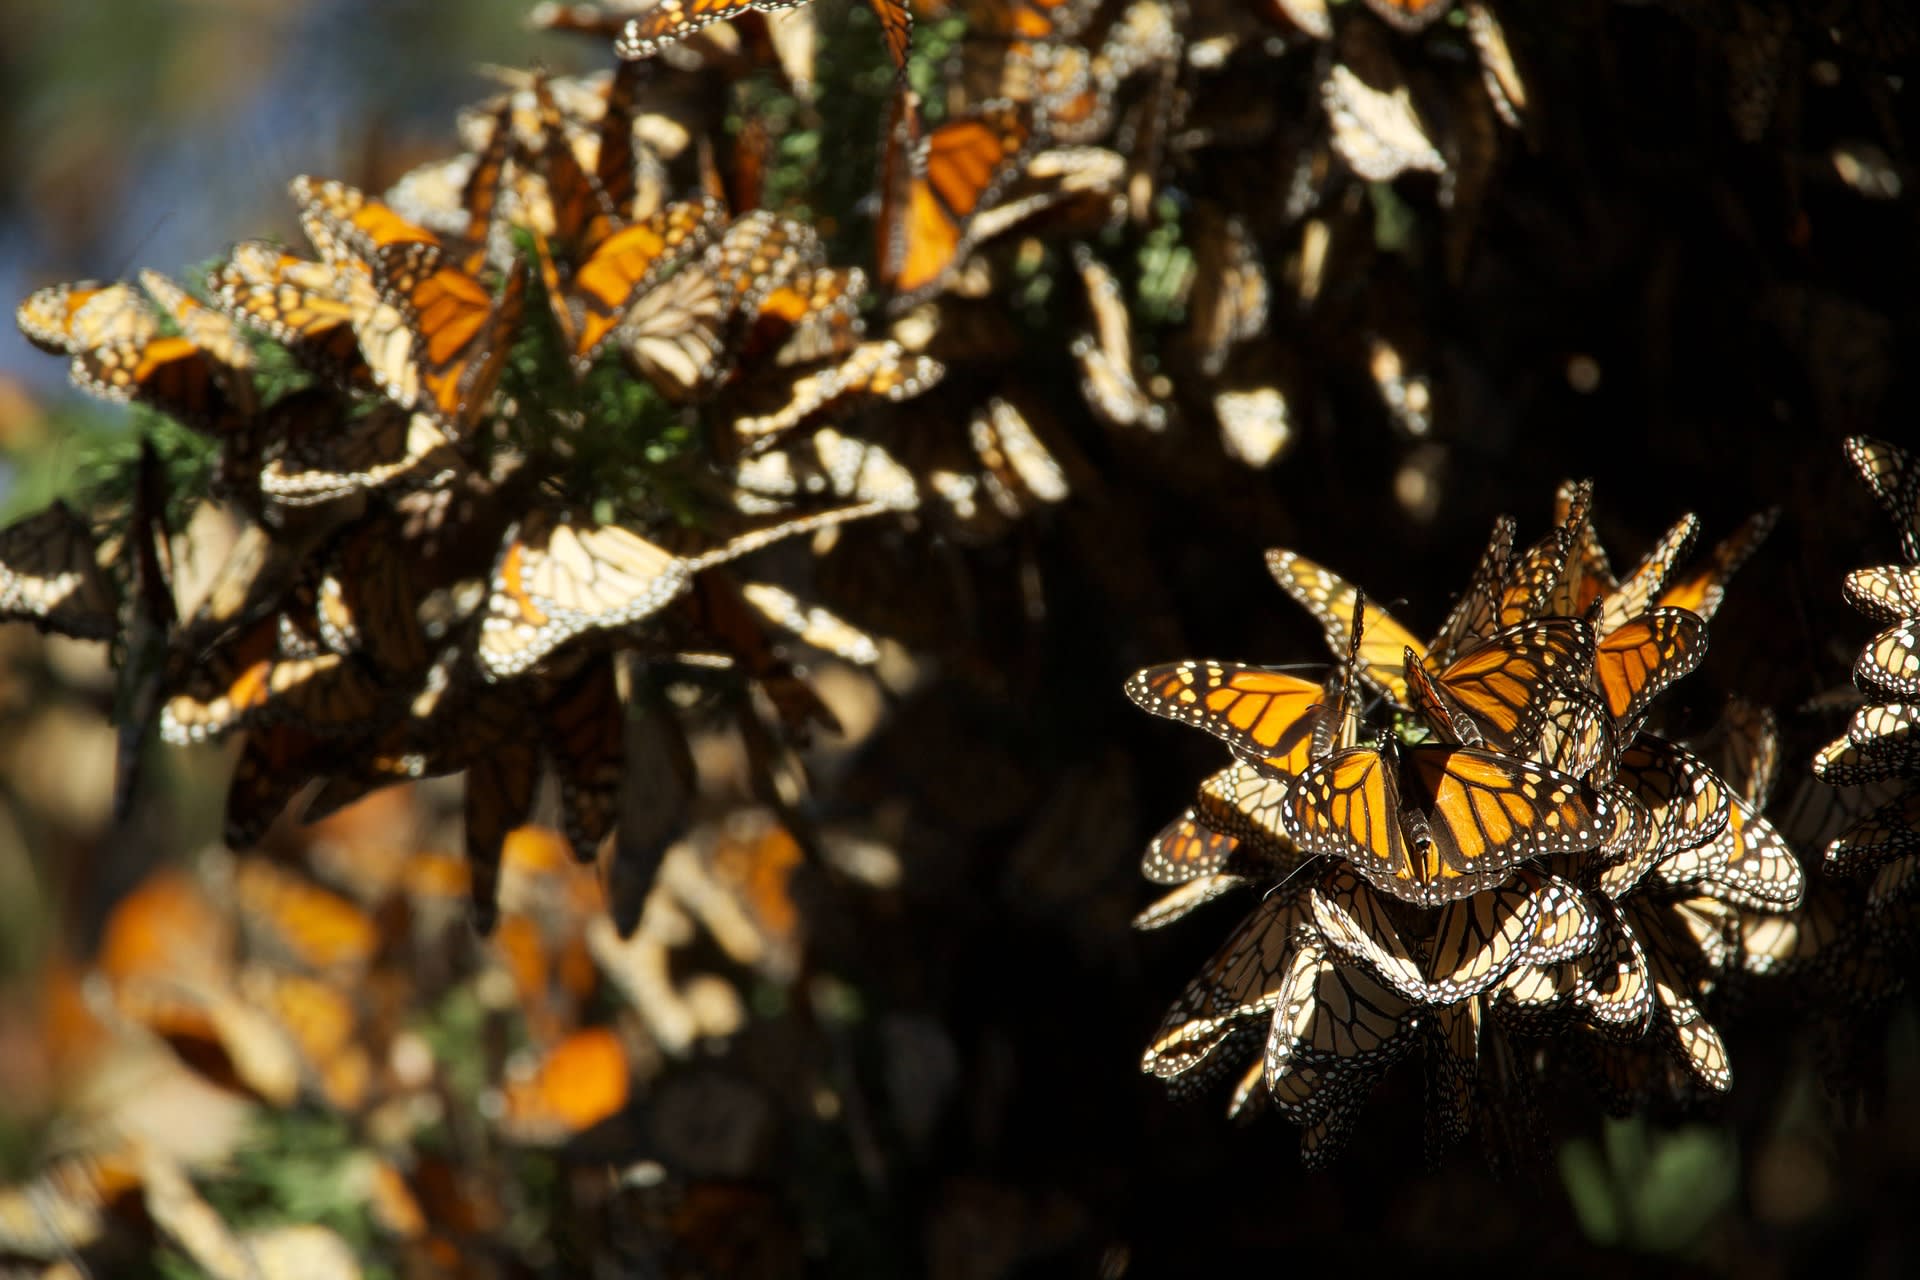 Desítky tisíc motýlů utvoří na stromech pestrobarevné shluky.